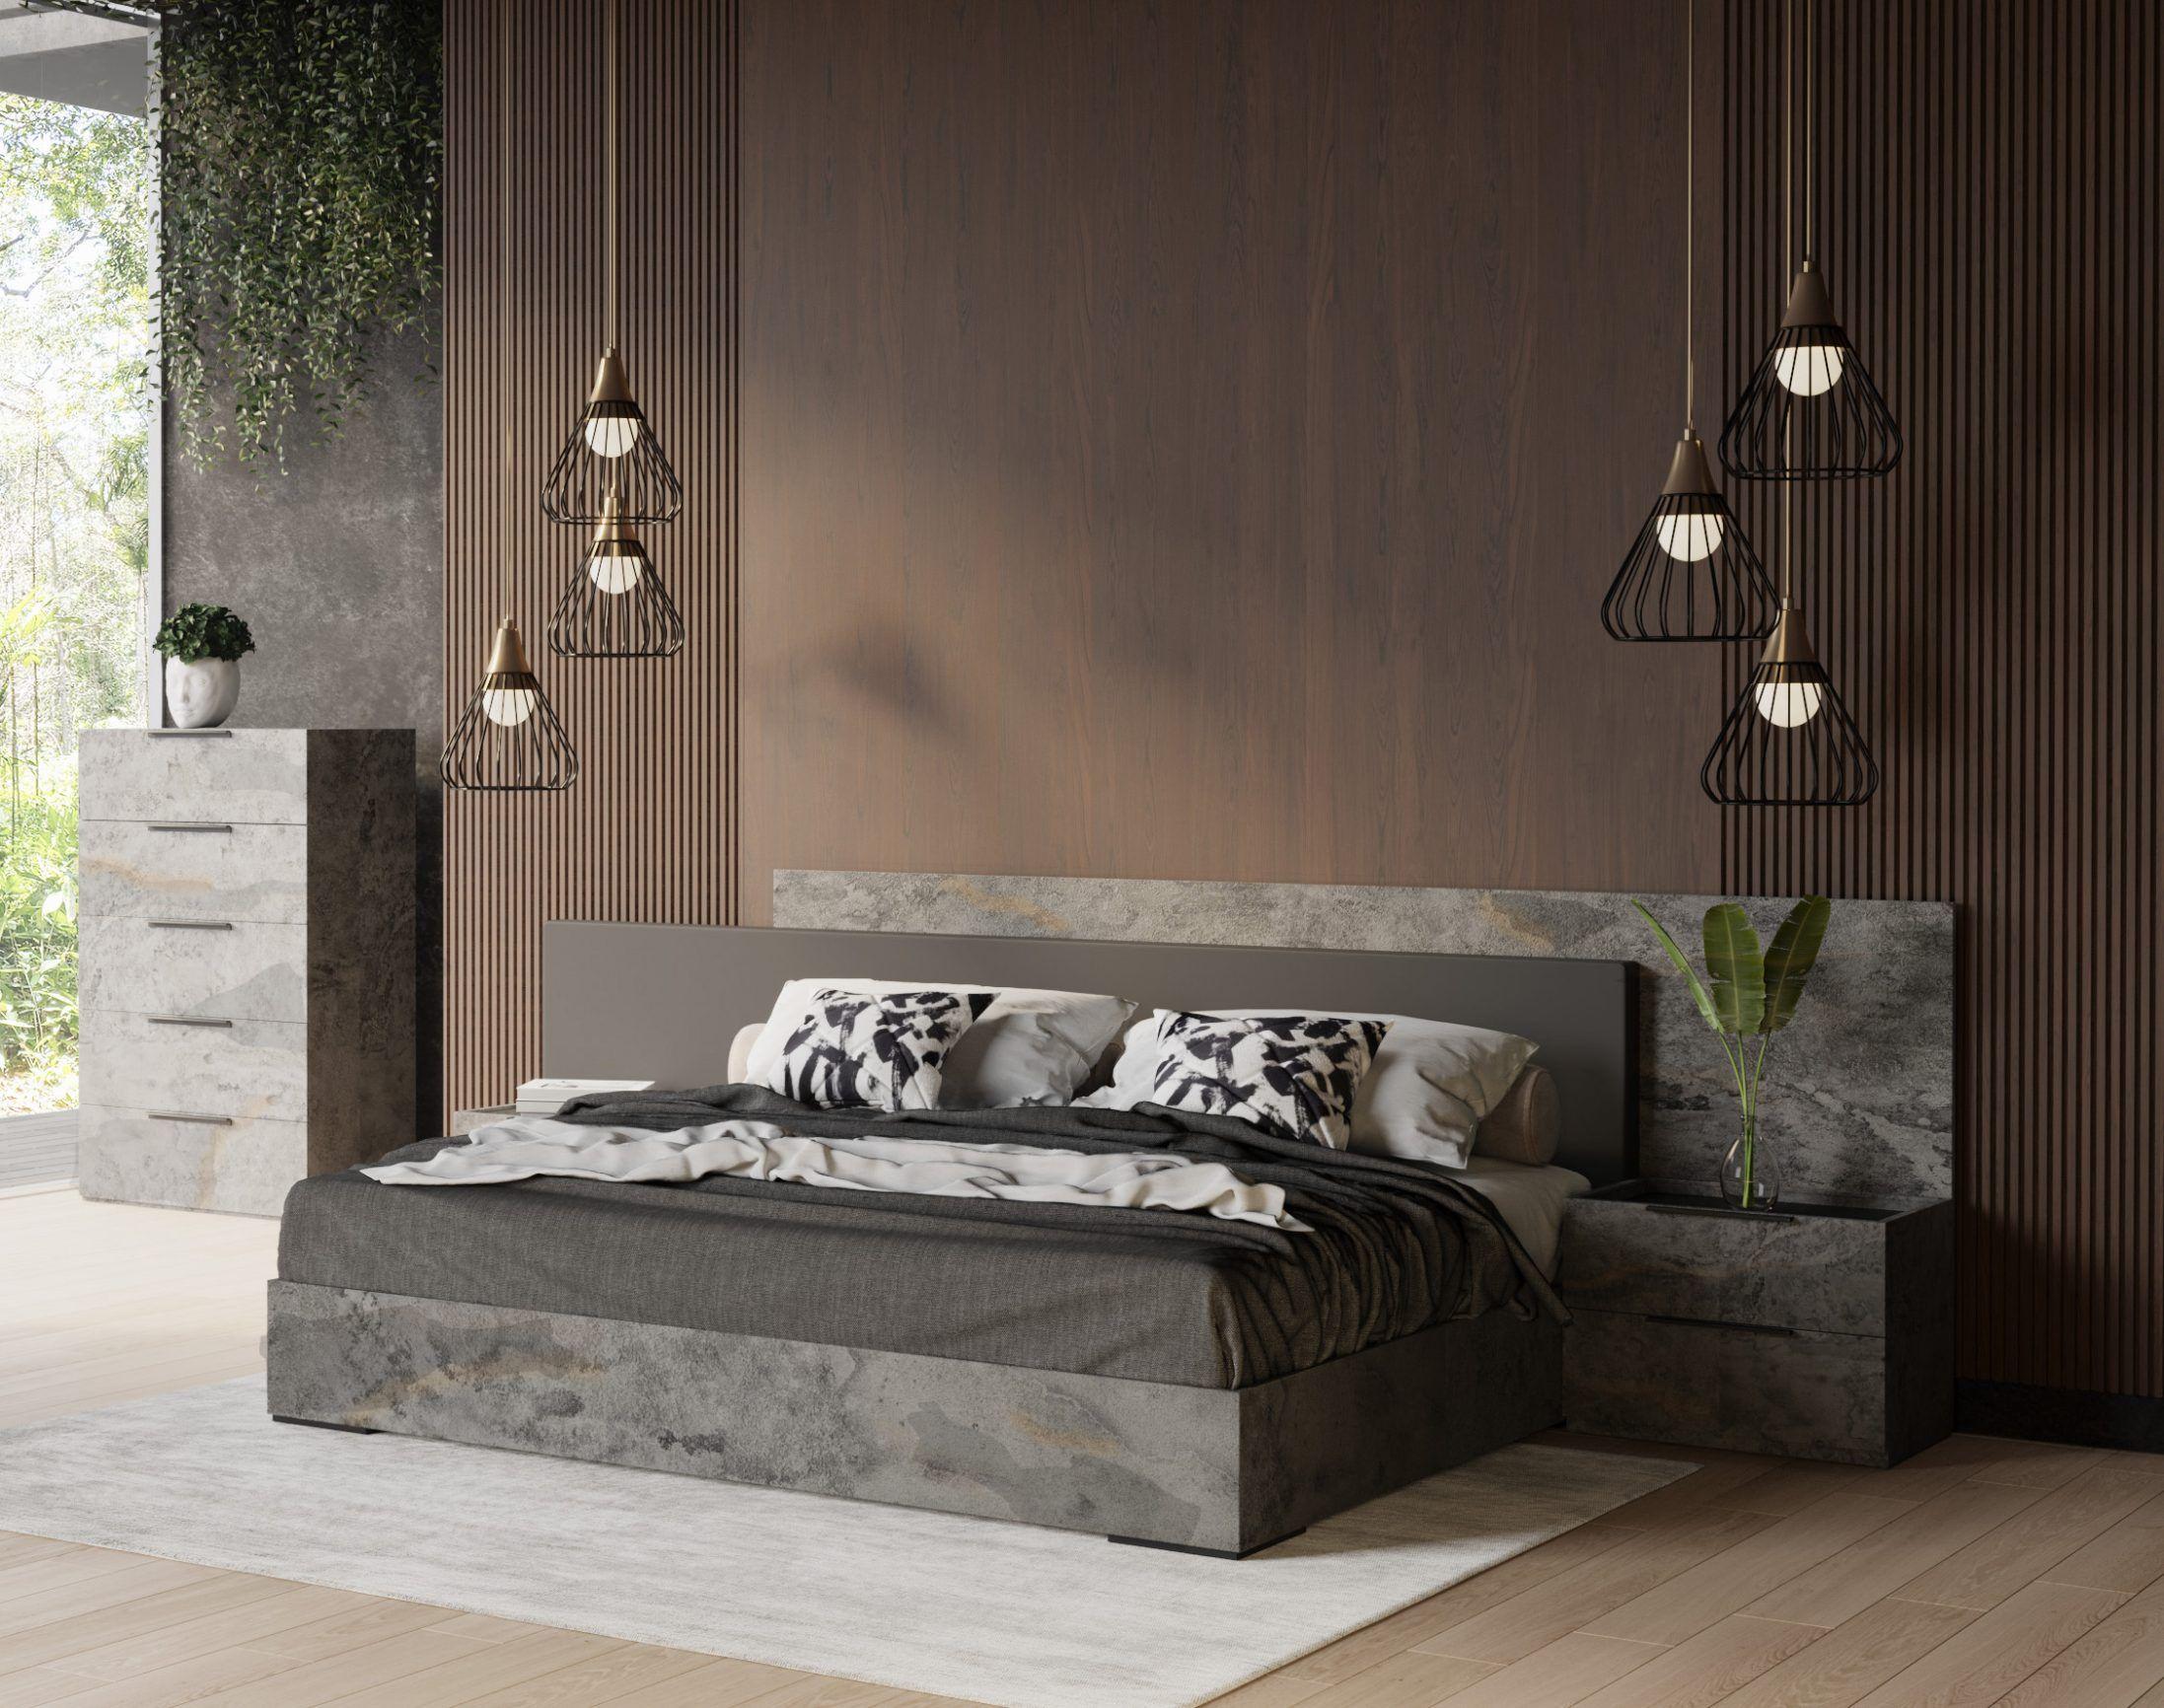 

    
Volcano Oxide Grey King Bedroom Set 3 Nova Domus Ferrara VIG Contemporary
